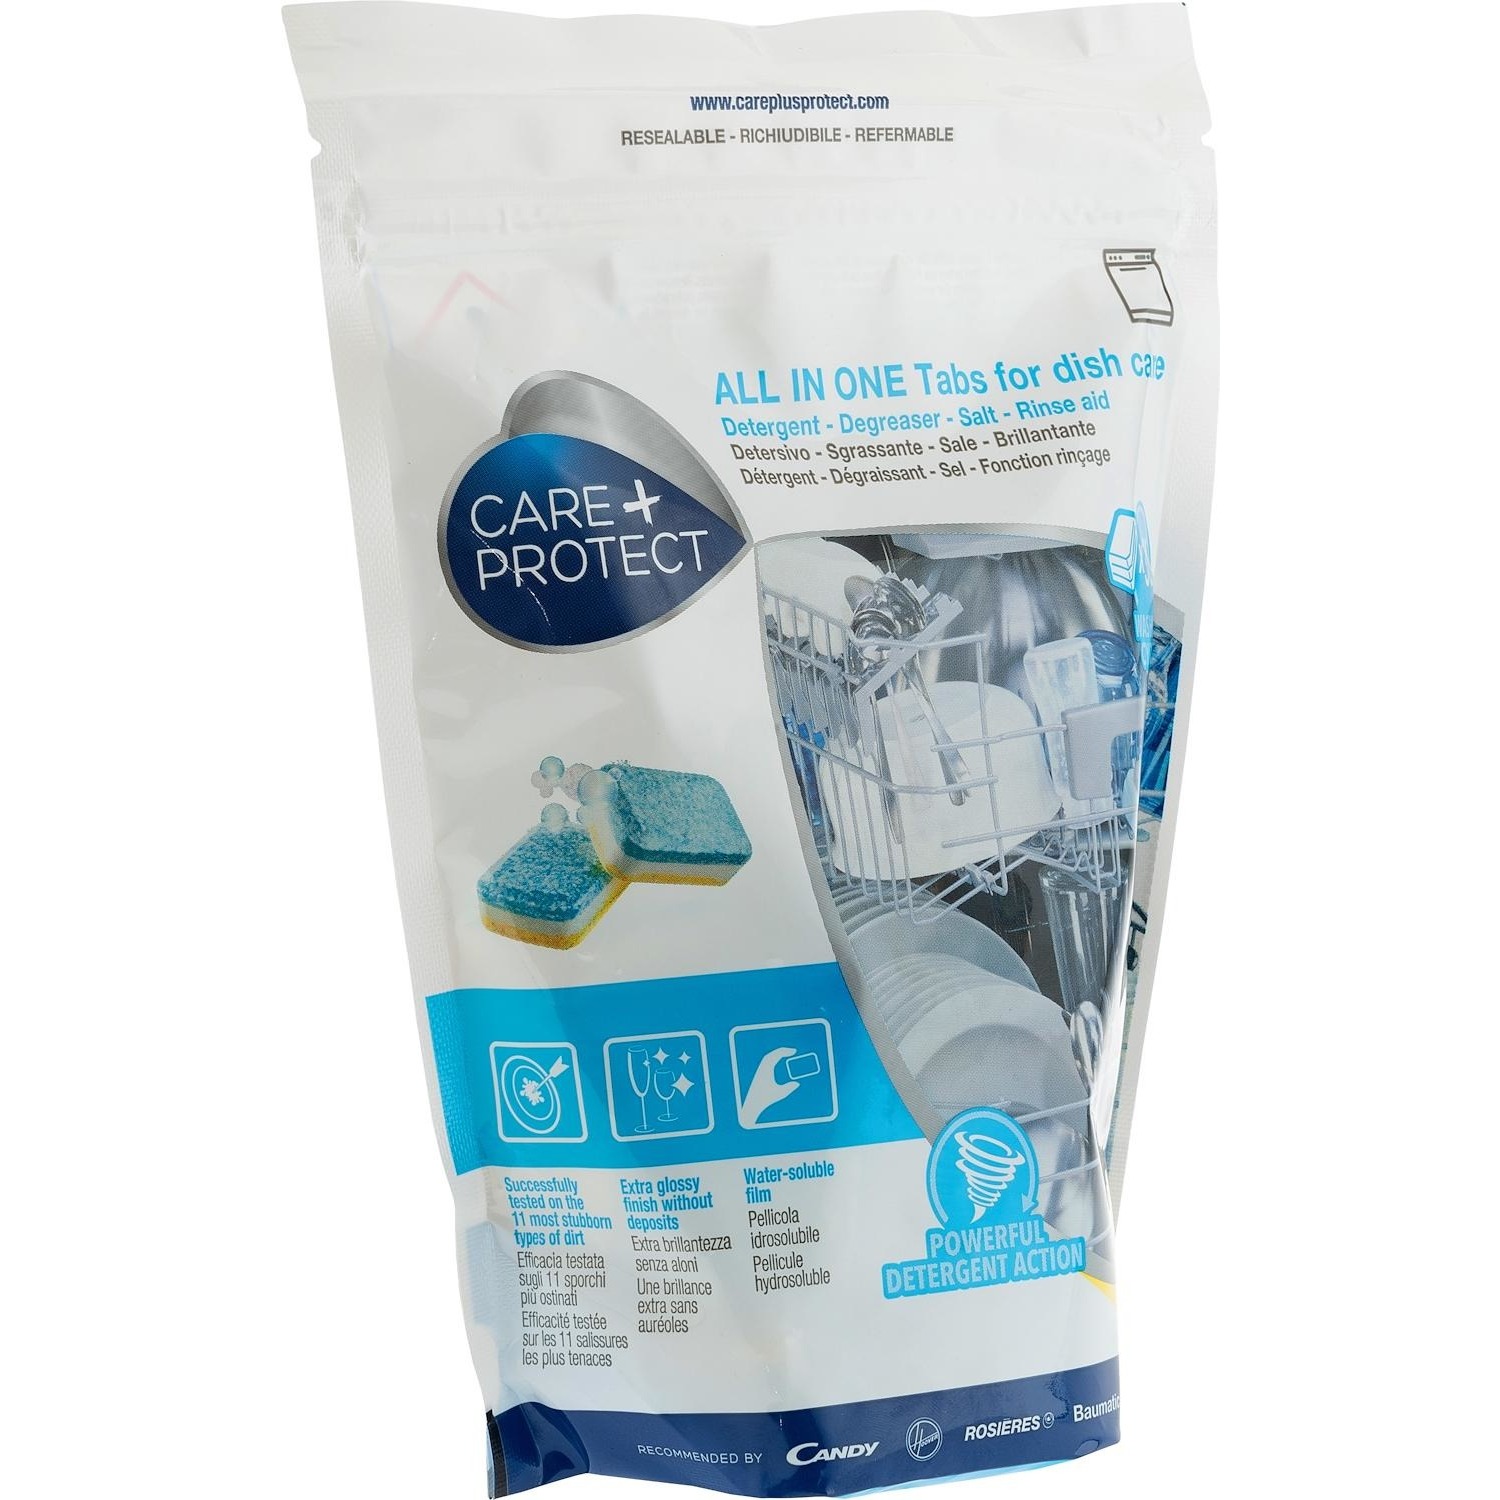 Immagine per All in one Tabs detergenti per stoviglie Care+Protect LDT2030  30 tabs da DIMOStore